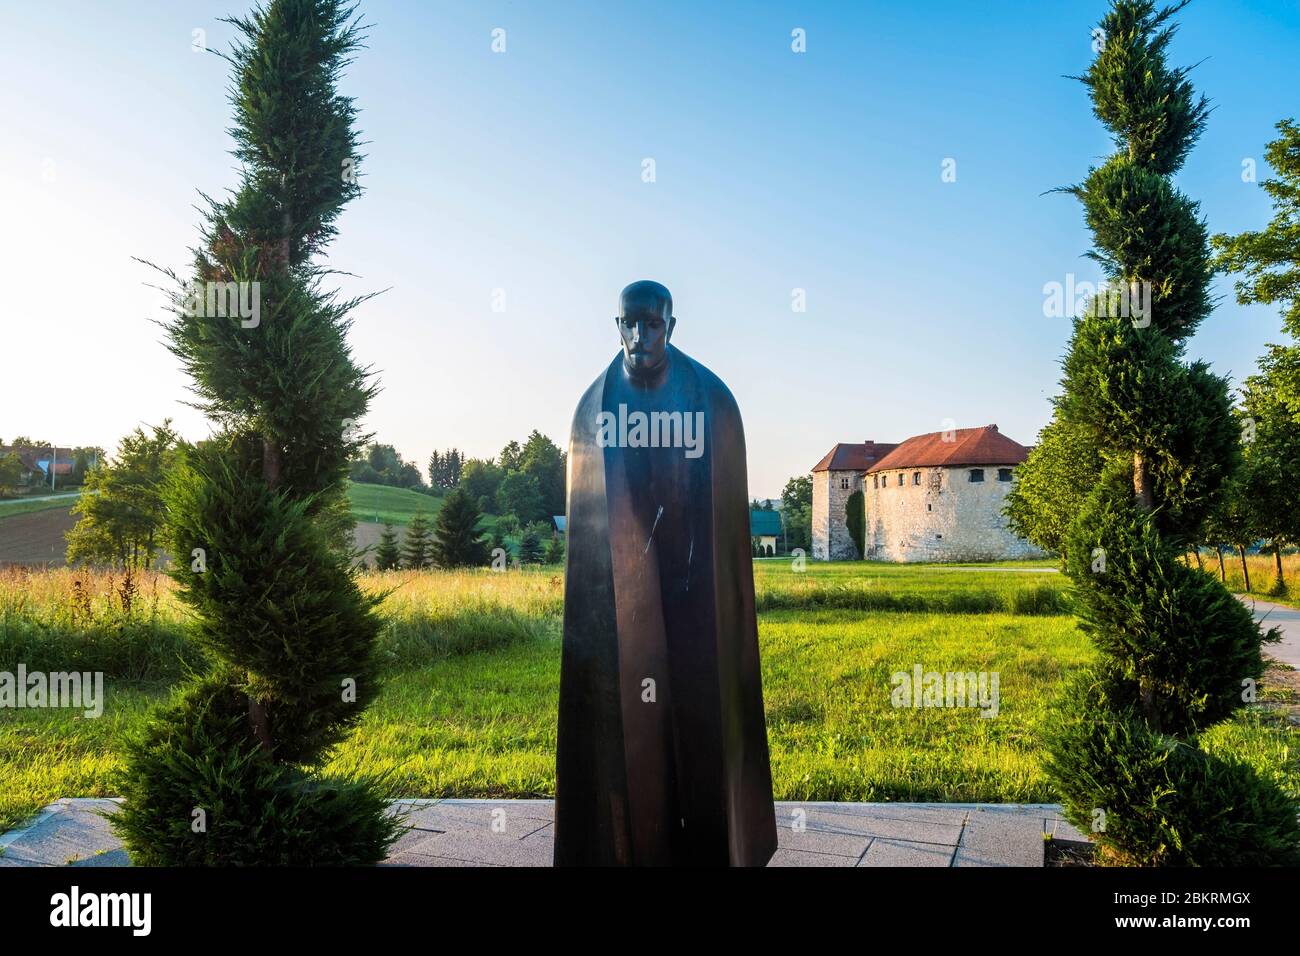 Kroatien, Karlovac County, Ribnik, Statue von Juraj Krizanic, erster Pan-slawischer Missionar, predigt die Annäherung der russisch-slawischen und orthodoxen Kirchen Stockfoto